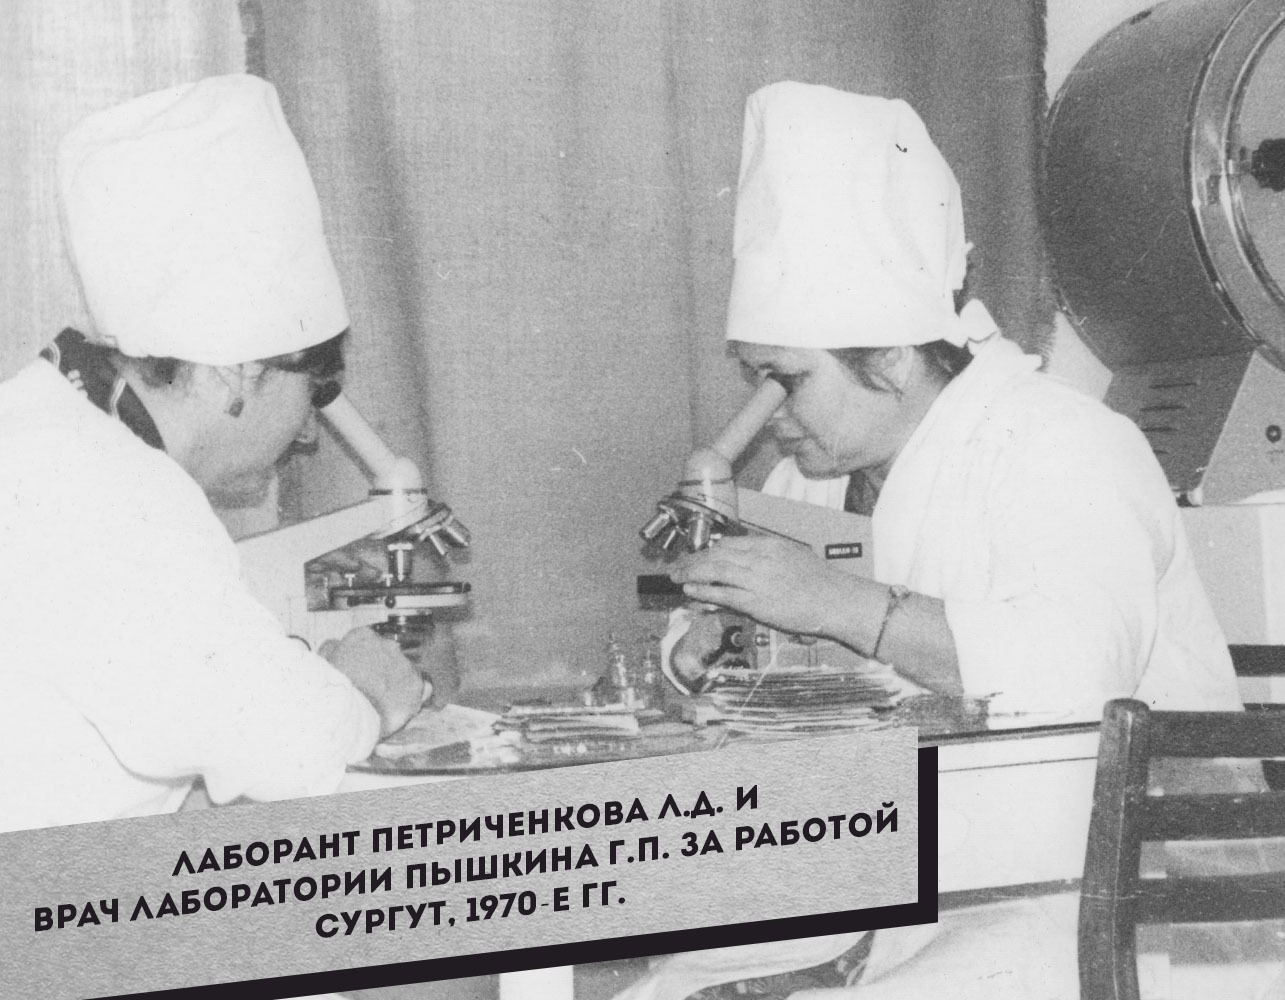 9.-Laborant-Petrichenkova-L.D.-i-vrach-laboratorii-Pyishkina-G.P.-za-rabotoy.-Surgut-1970-e-gg.